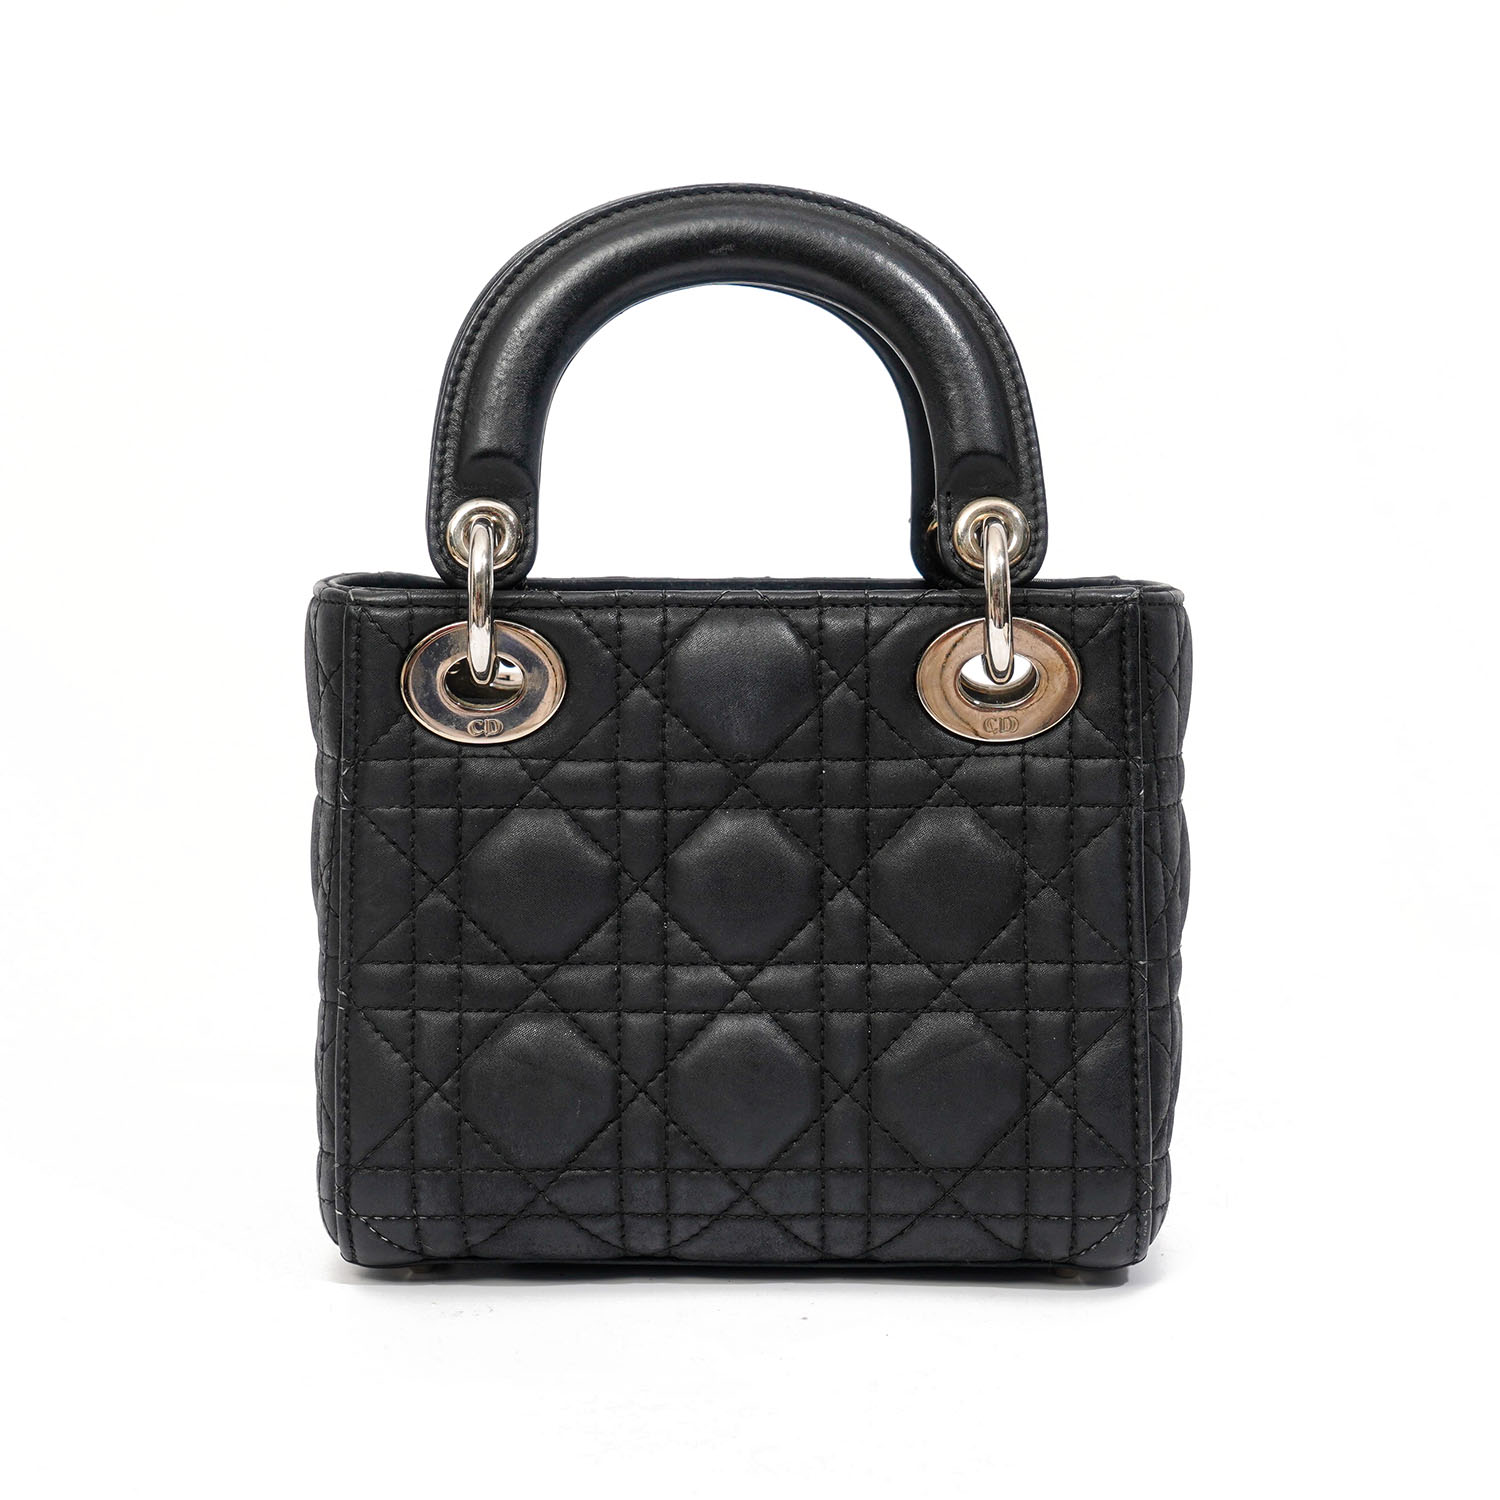 Túi Xách Dior Lady Bag Black   Shop giày Swagger